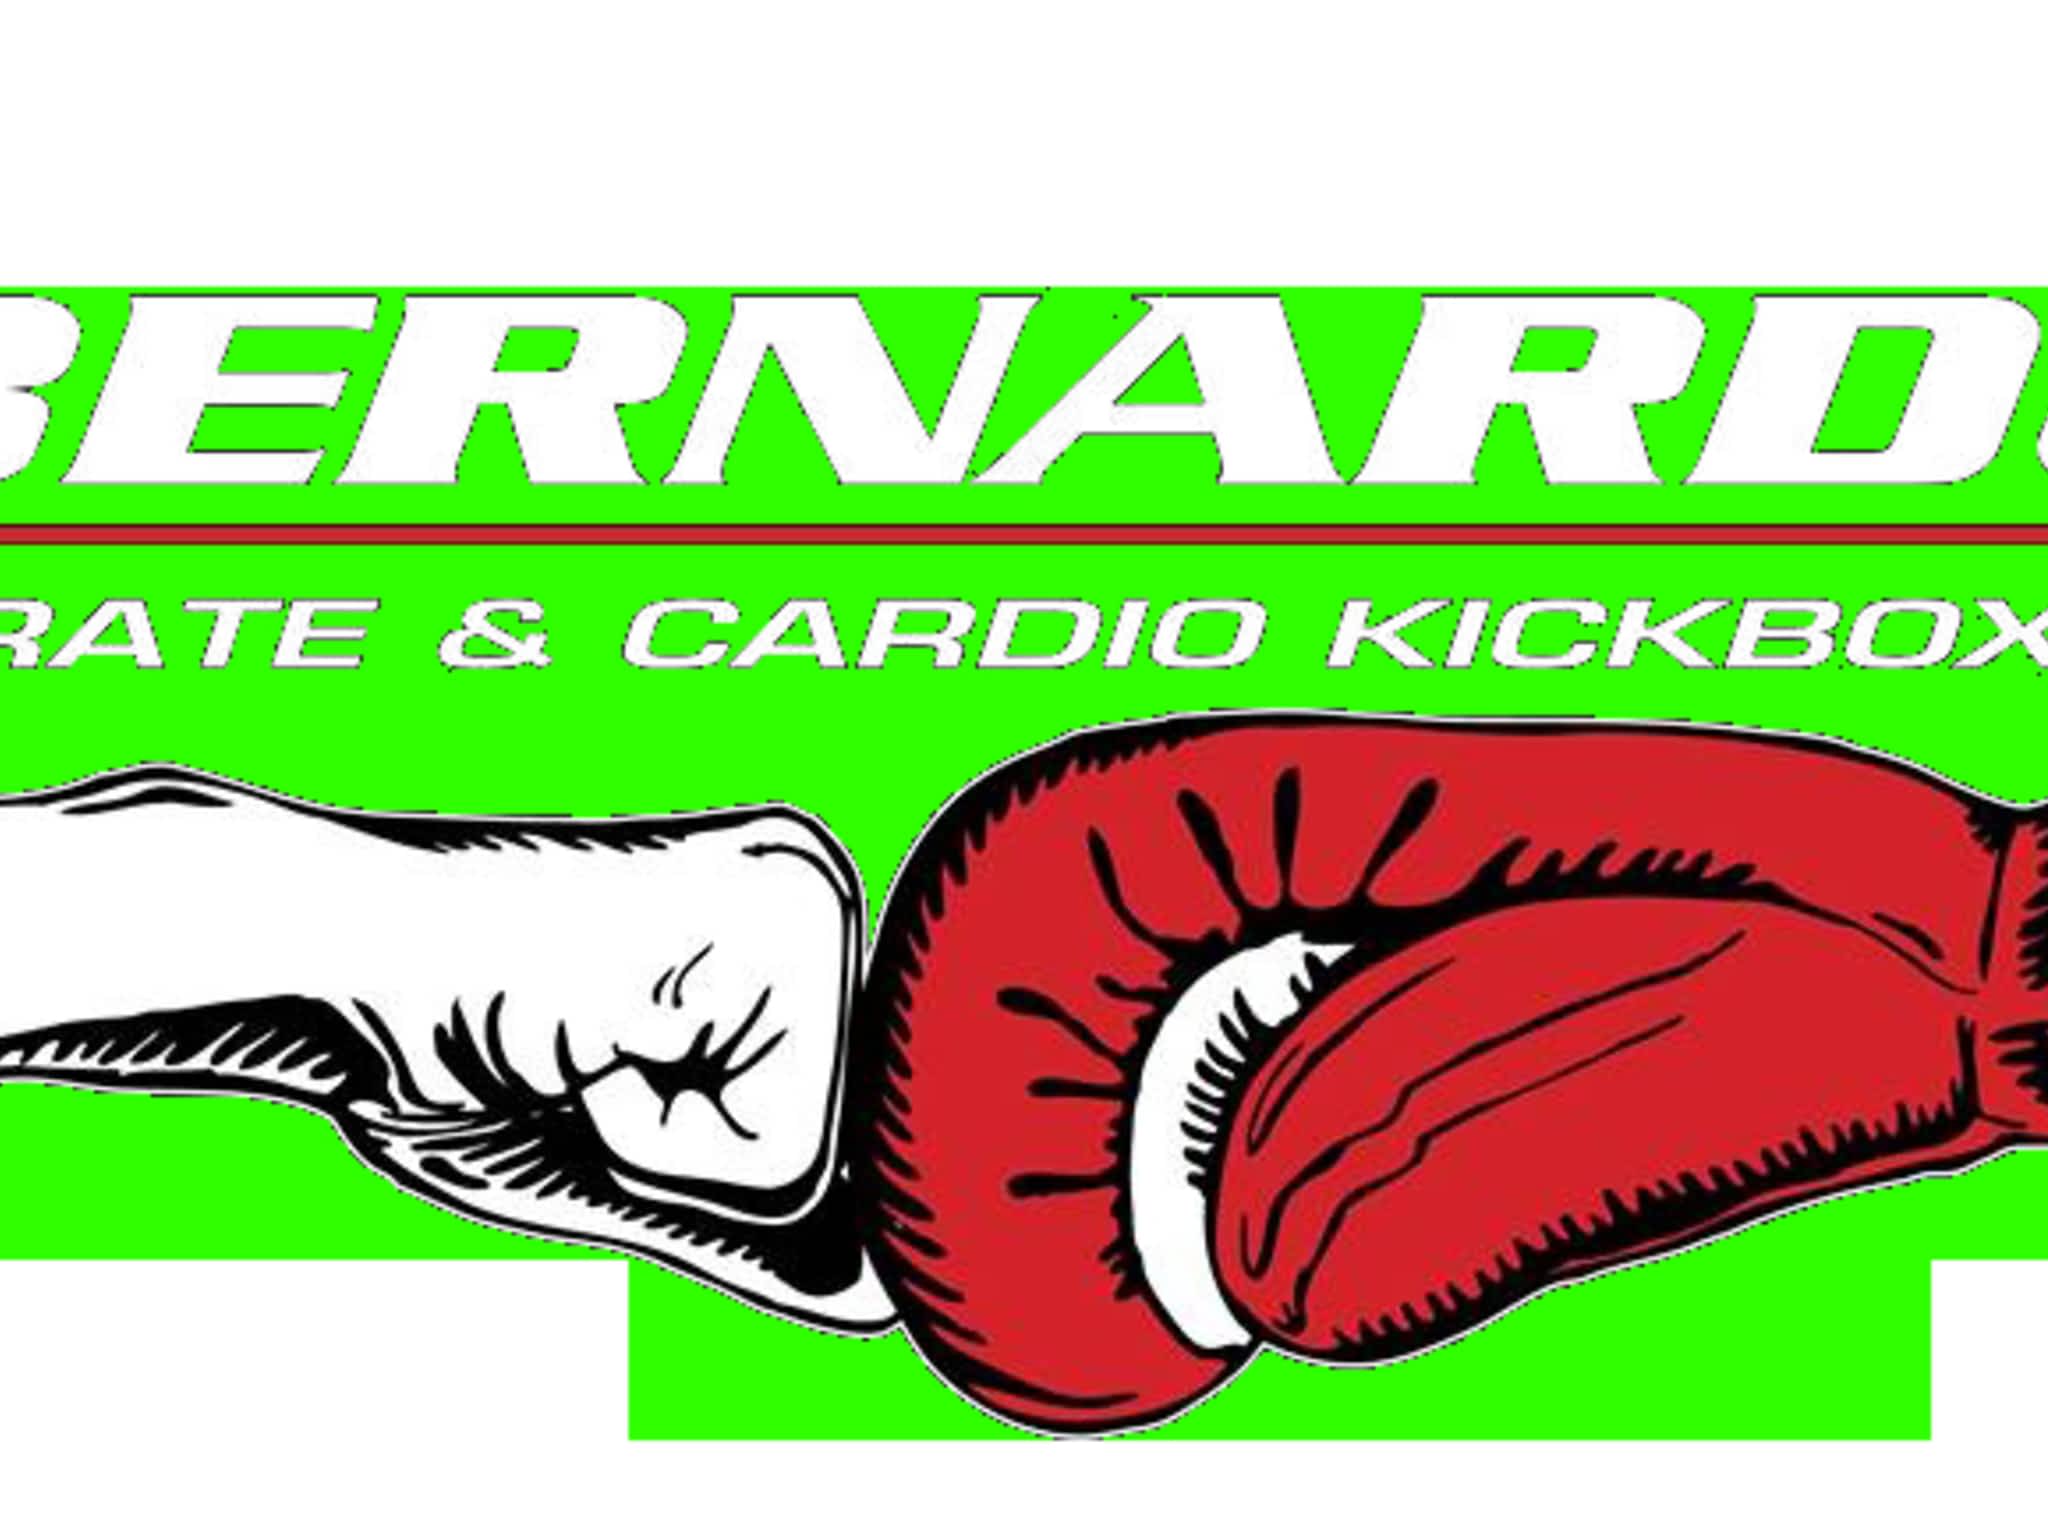 photo Bernardo Karate And Cardio Kickboxing